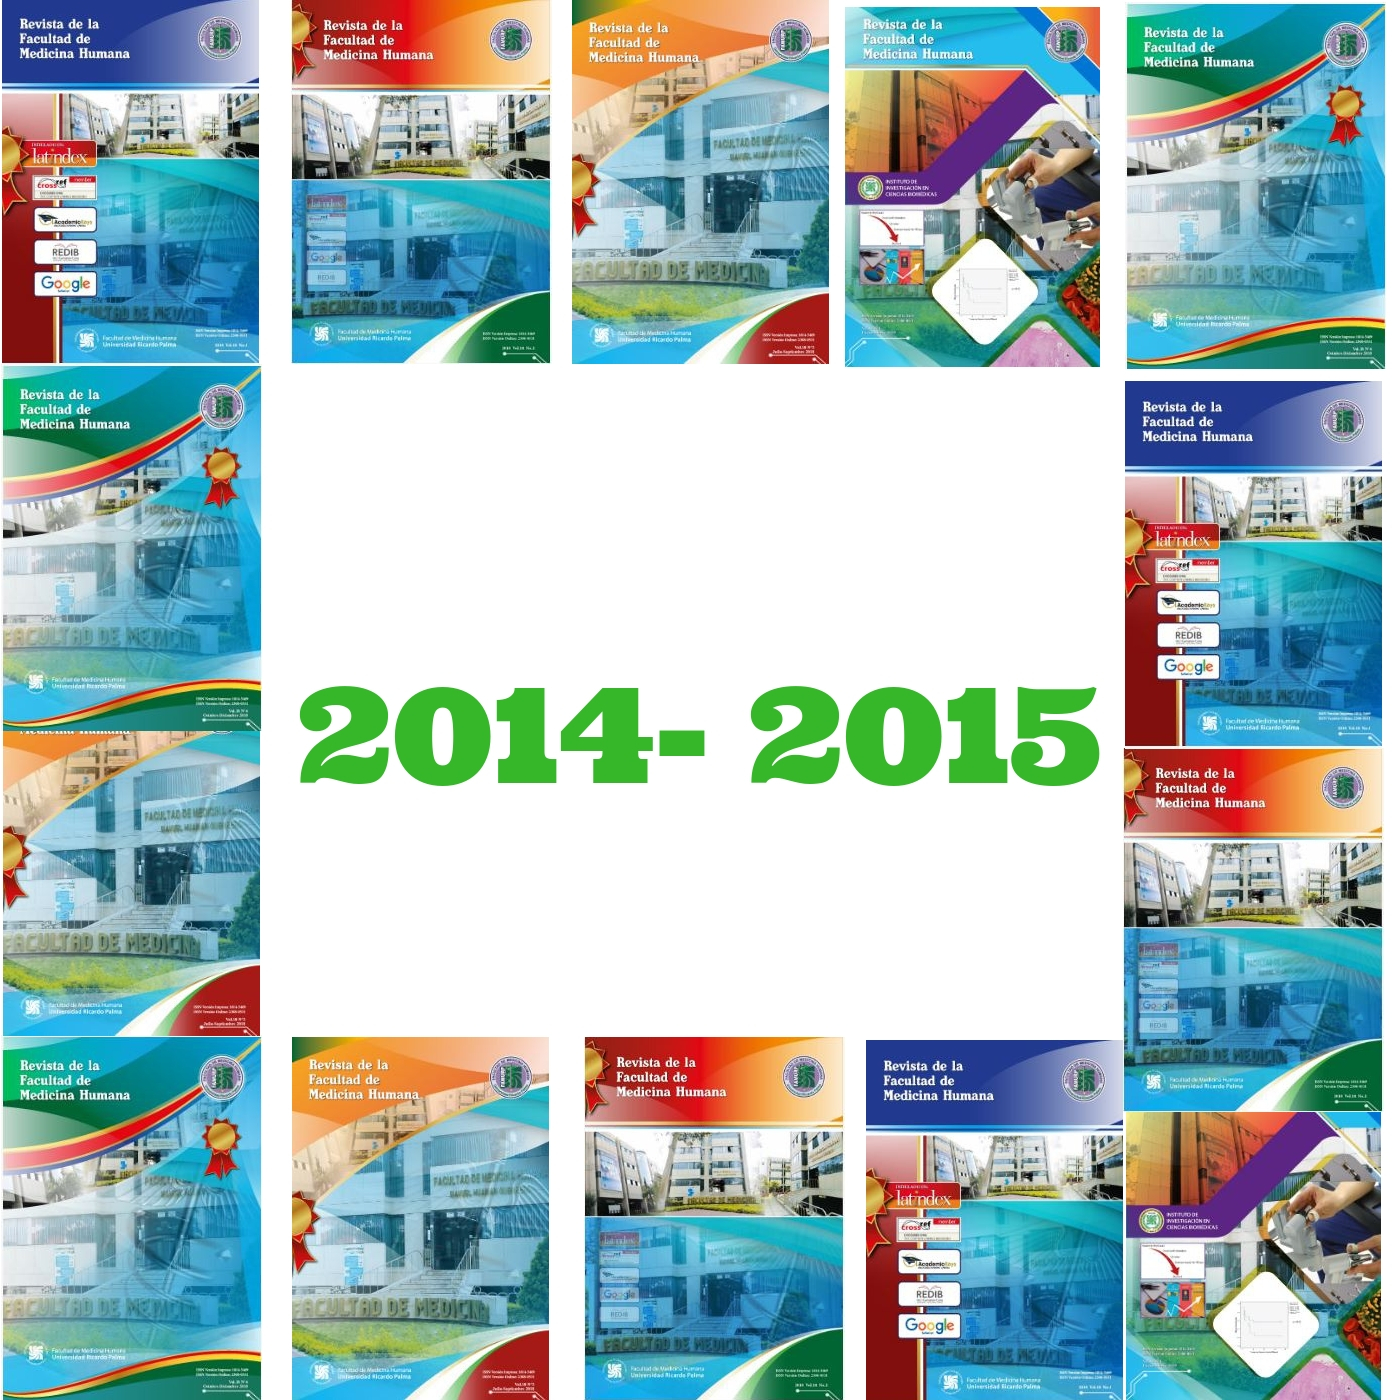 					View Vol. 15 No. 2 (2015): Revista de la Facultad de Medicina Humana
				